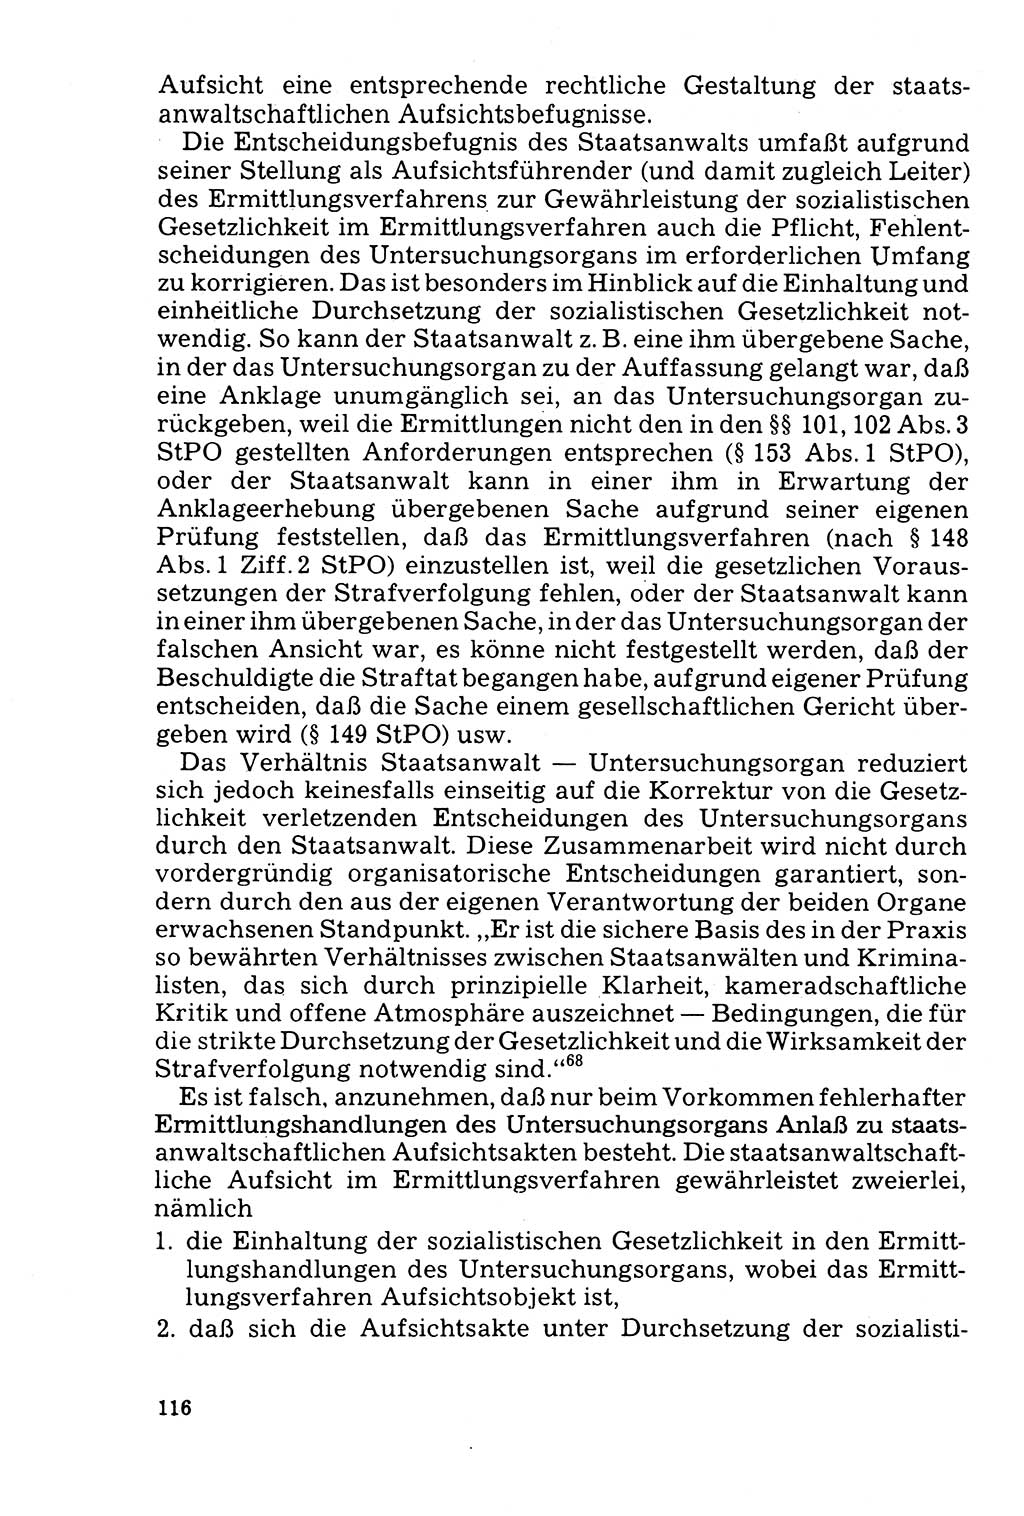 Der Abschluß des Ermittlungsverfahrens [Deutsche Demokratische Republik (DDR)] 1978, Seite 116 (Abschl. EV DDR 1978, S. 116)